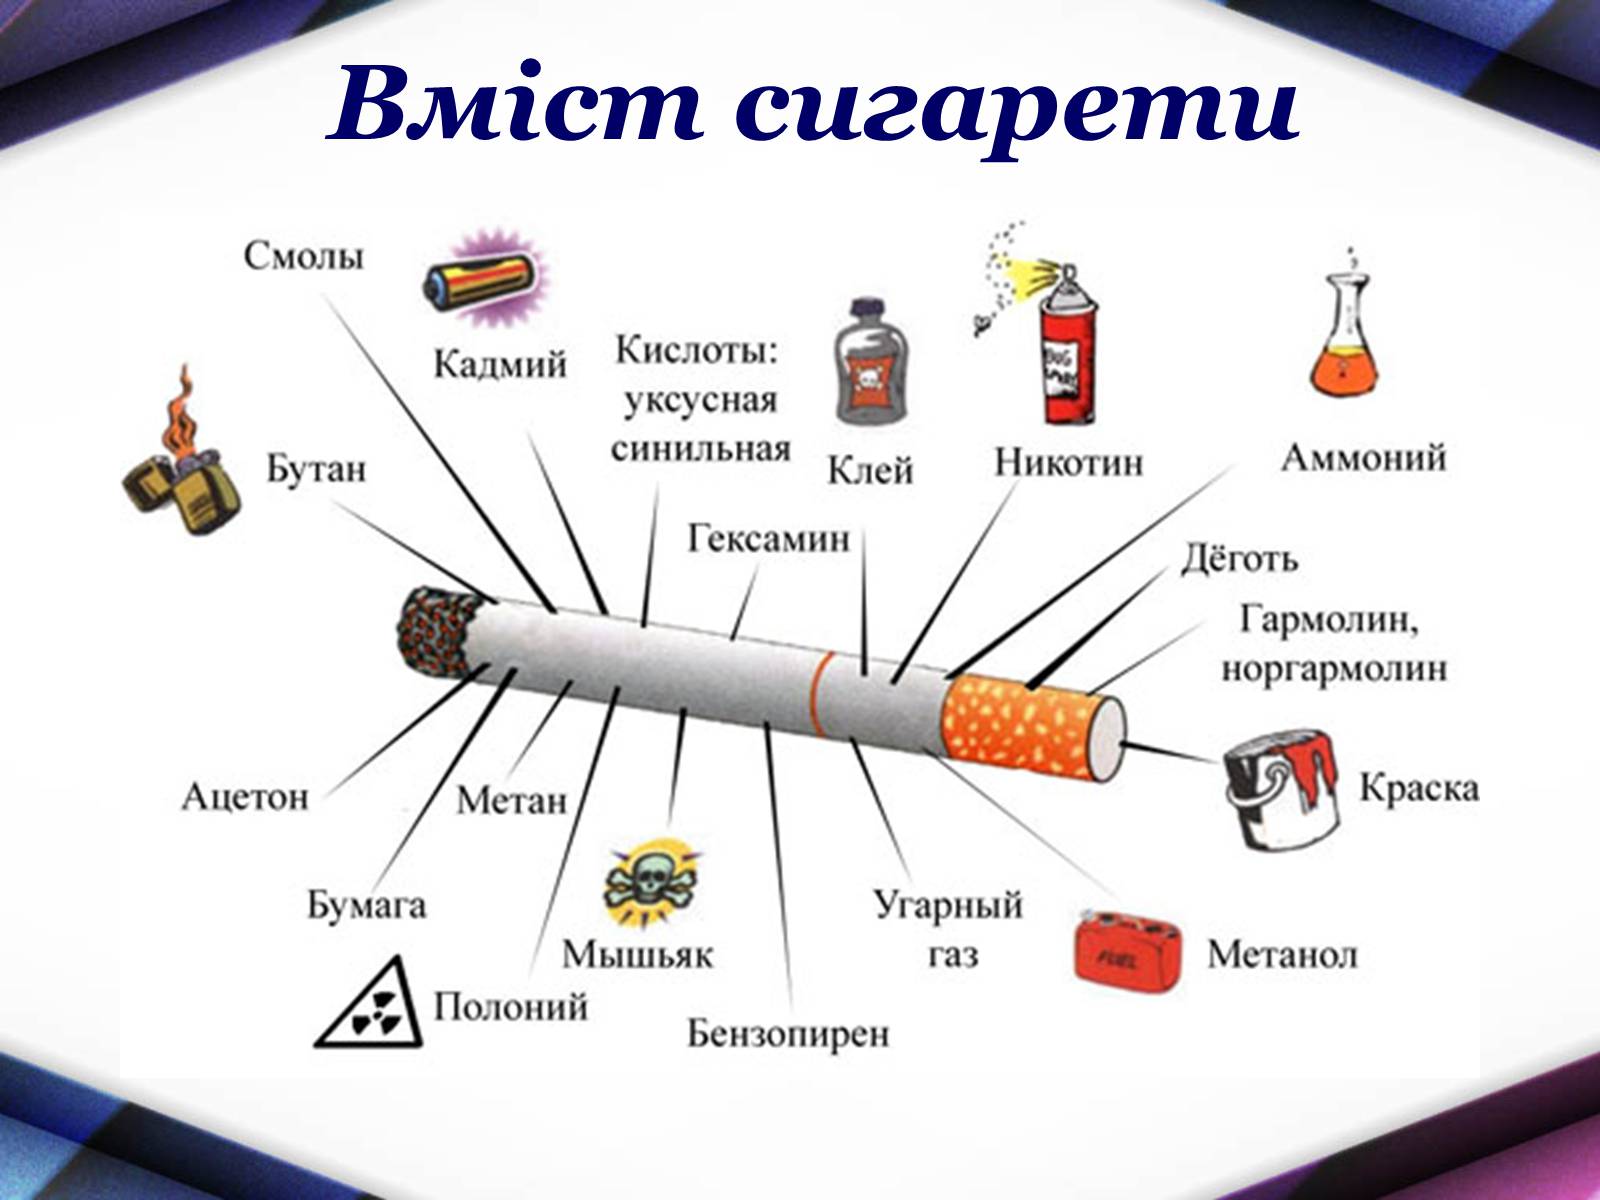 Химический состав сигареты и сигаретного дыма